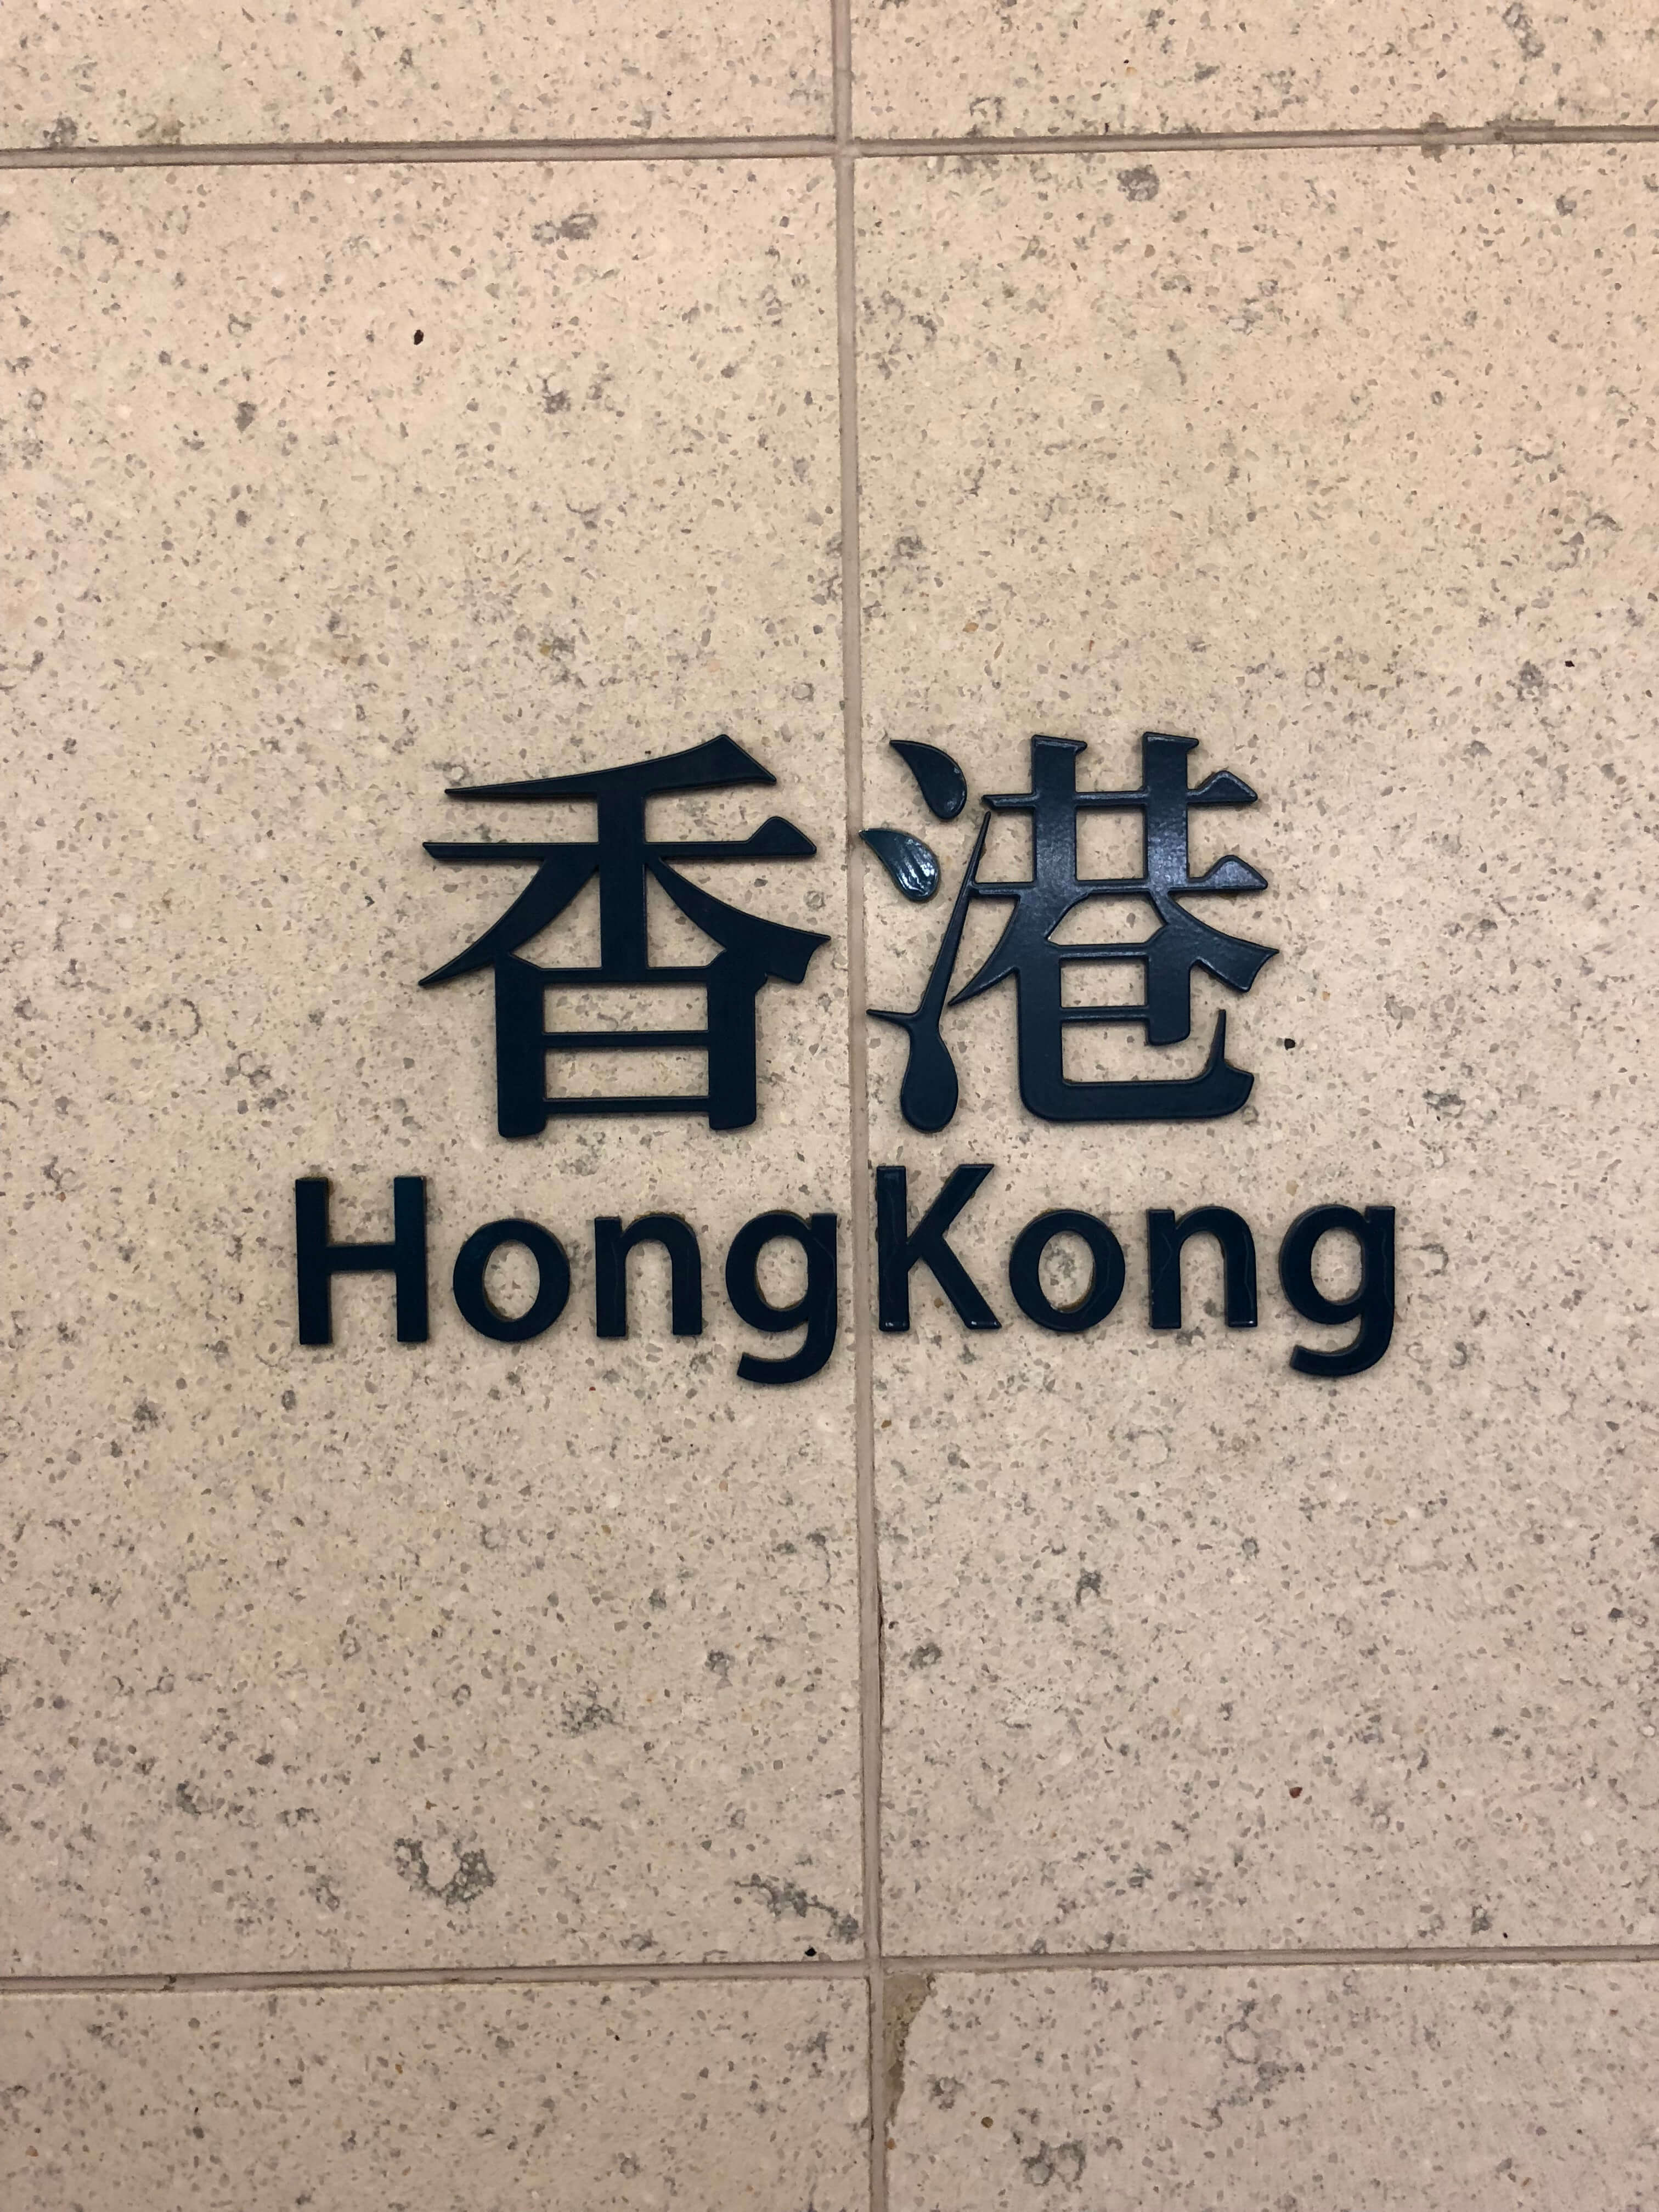 Asia Adventure Part 1 – Hong Kong